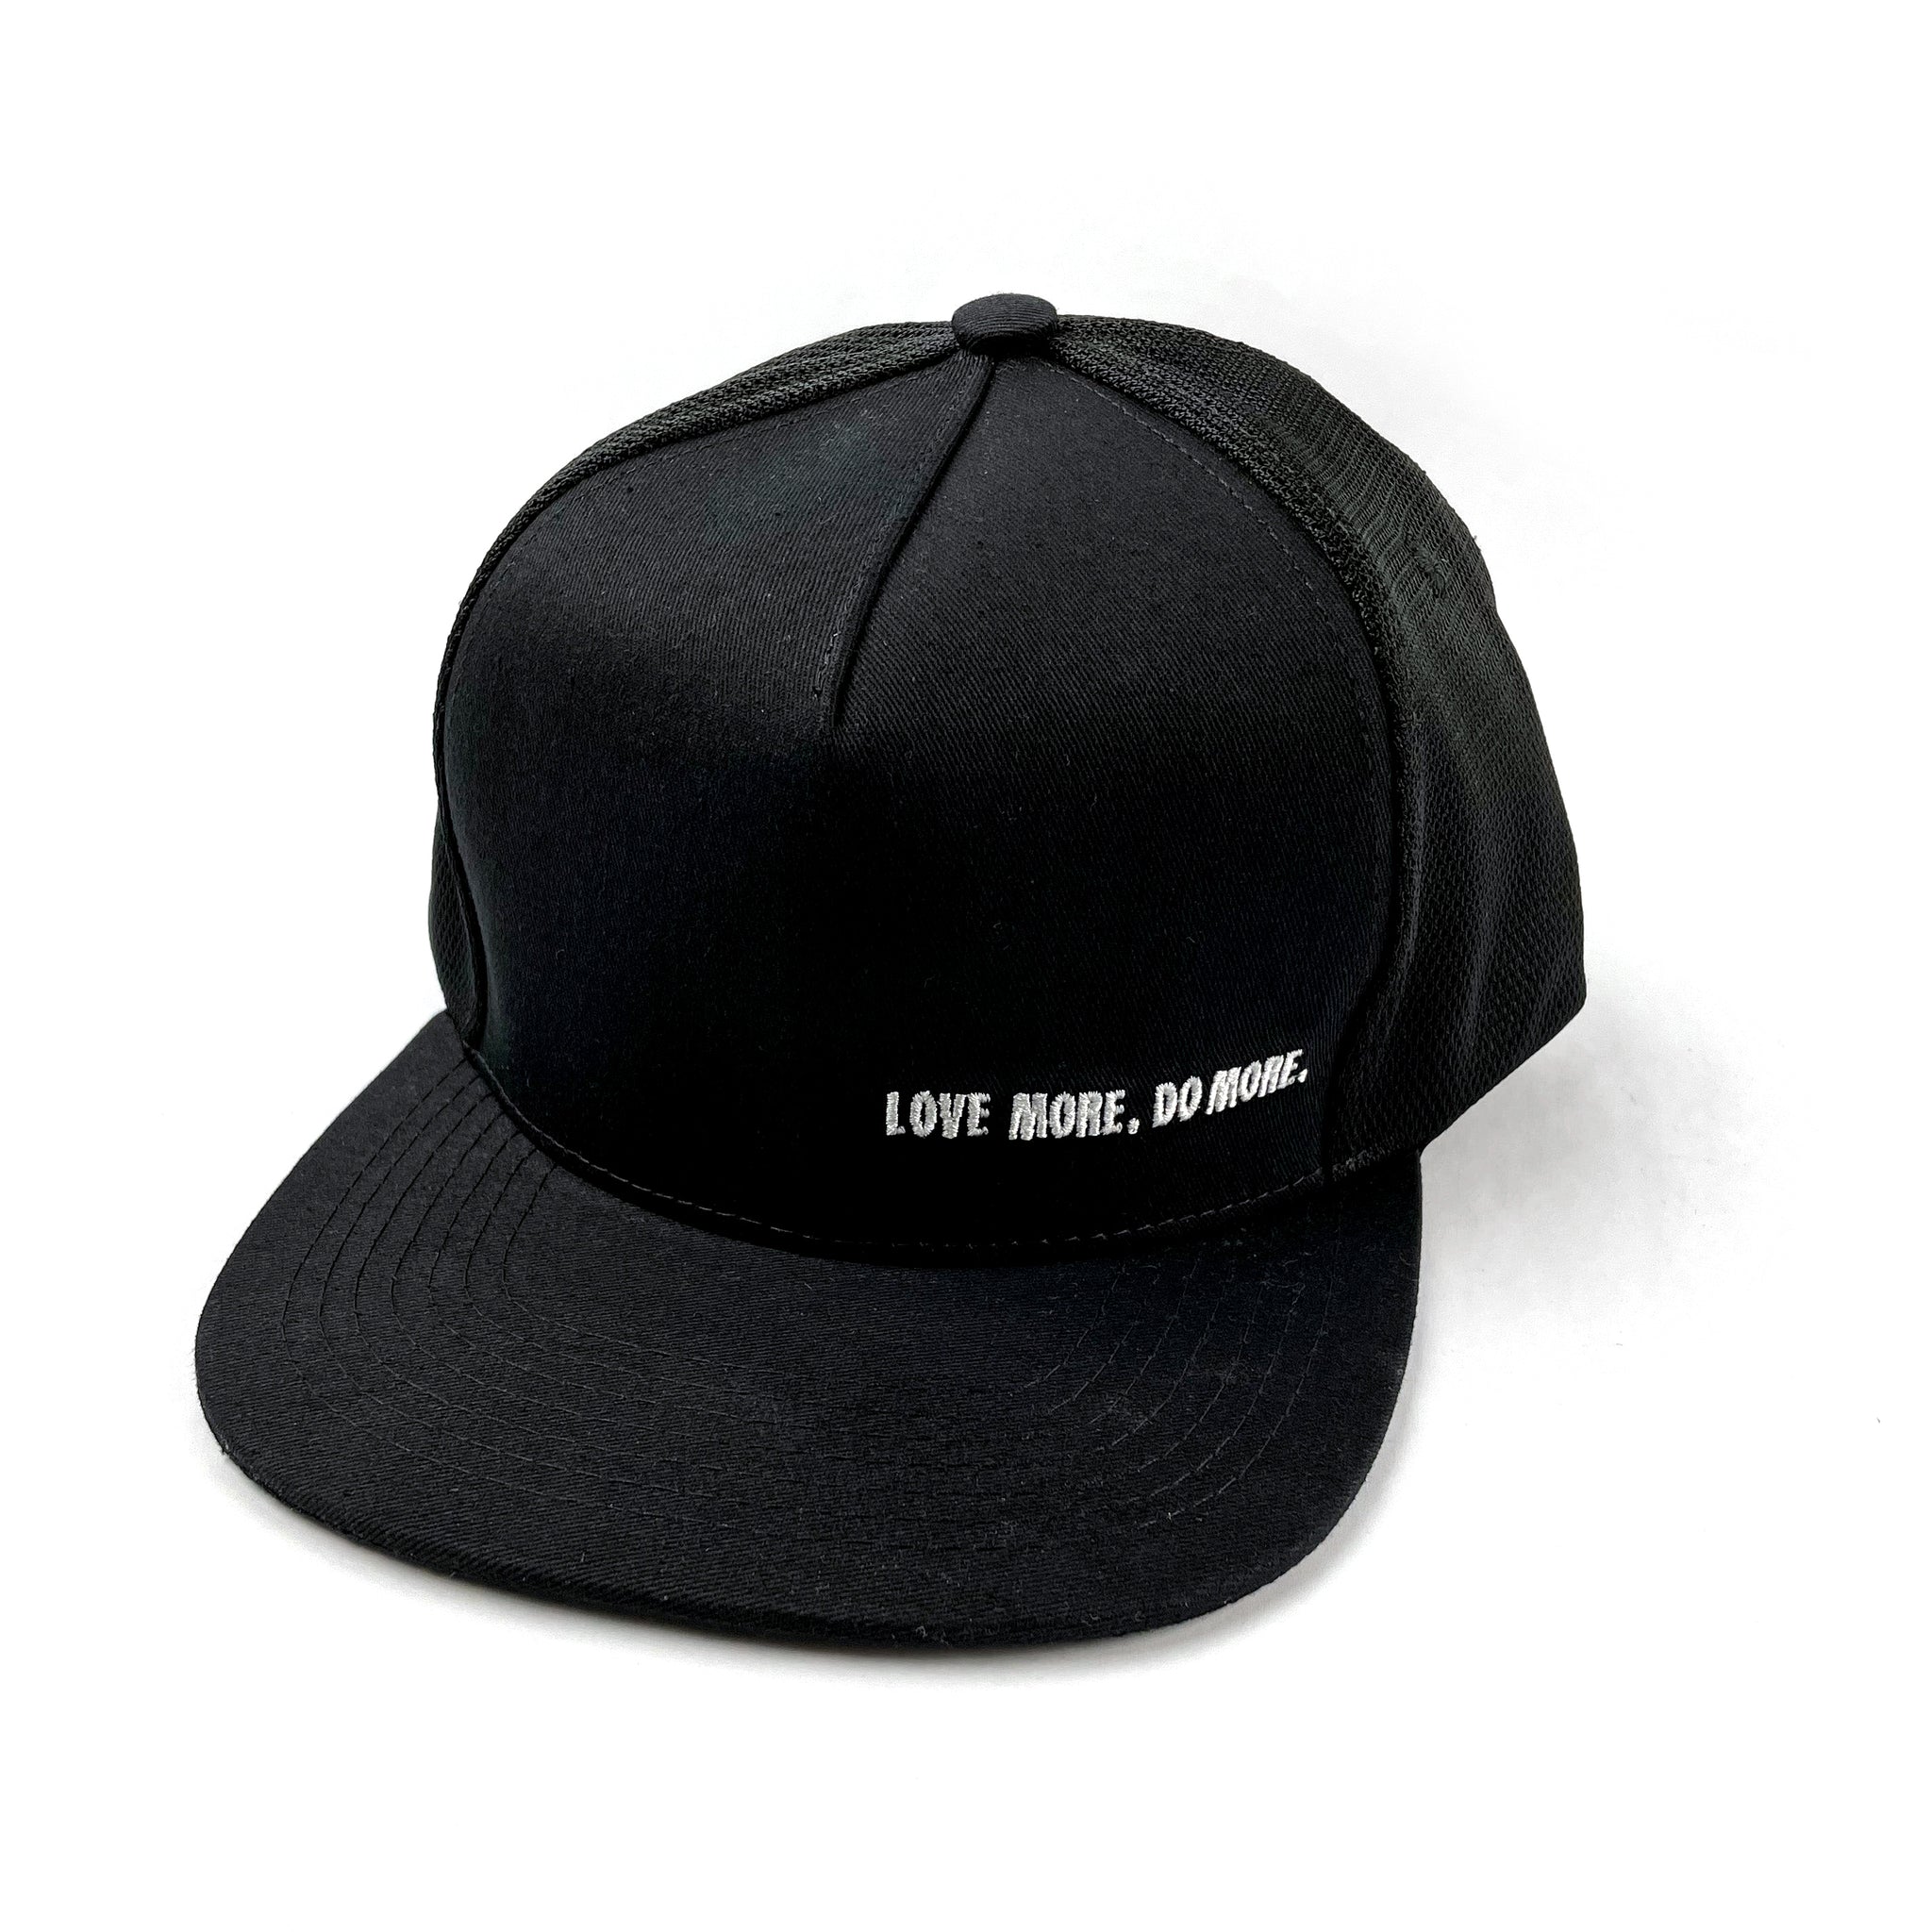 Love More Do More / FMSC Black Trucker Hat